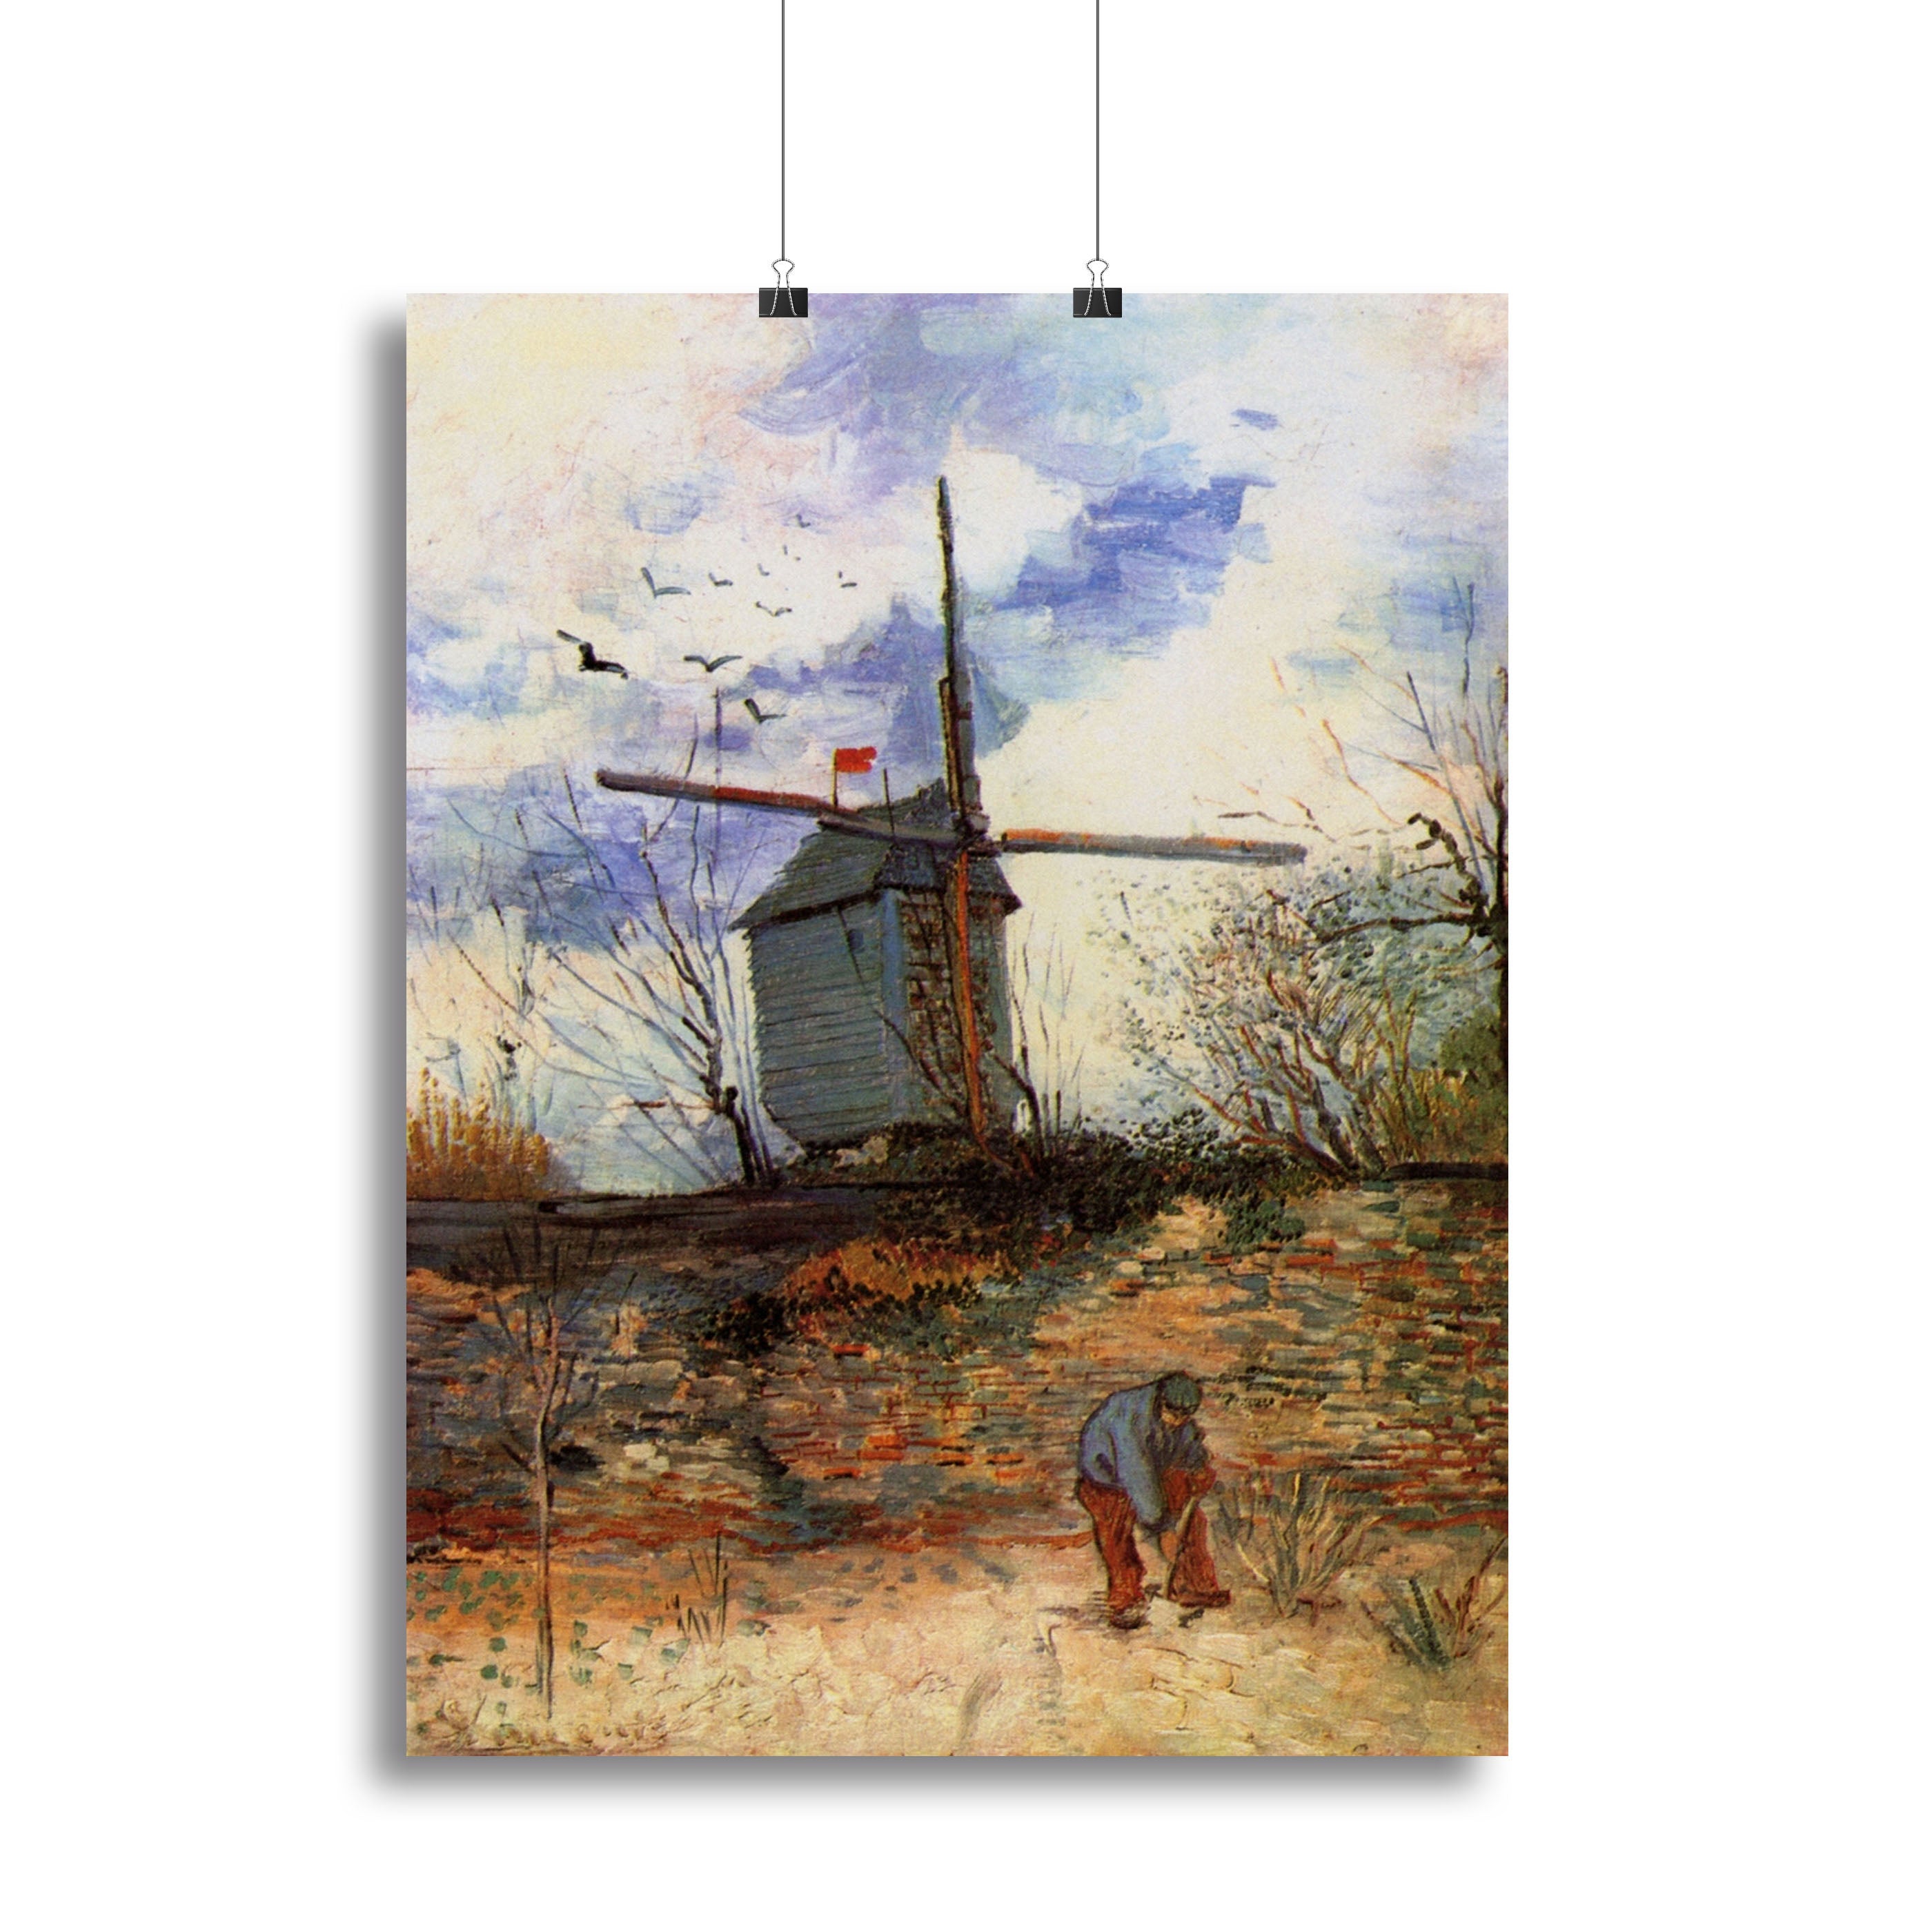 Le Moulin de la Galette 2 by Van Gogh Canvas Print or Poster - Canvas Art Rocks - 2